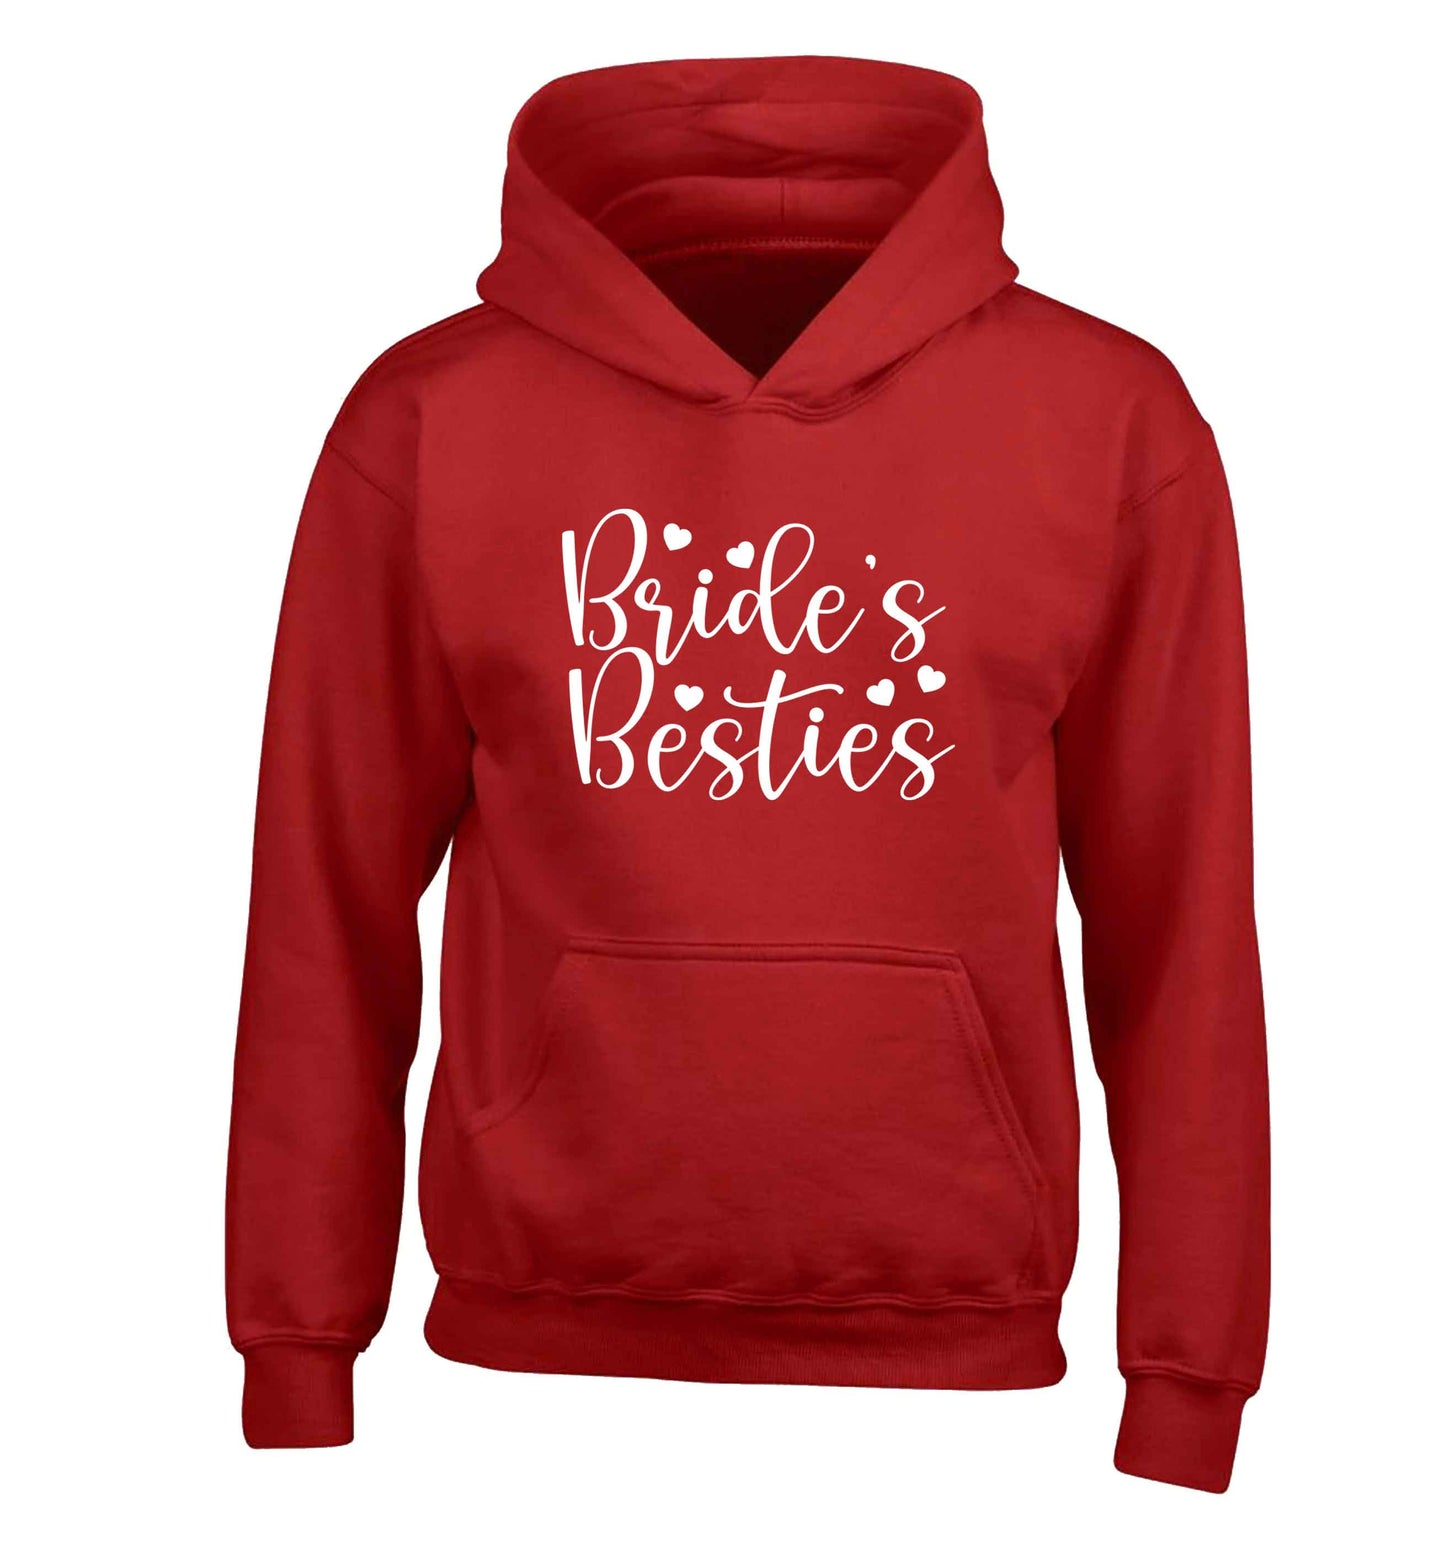 Brides besties children's red hoodie 12-13 Years